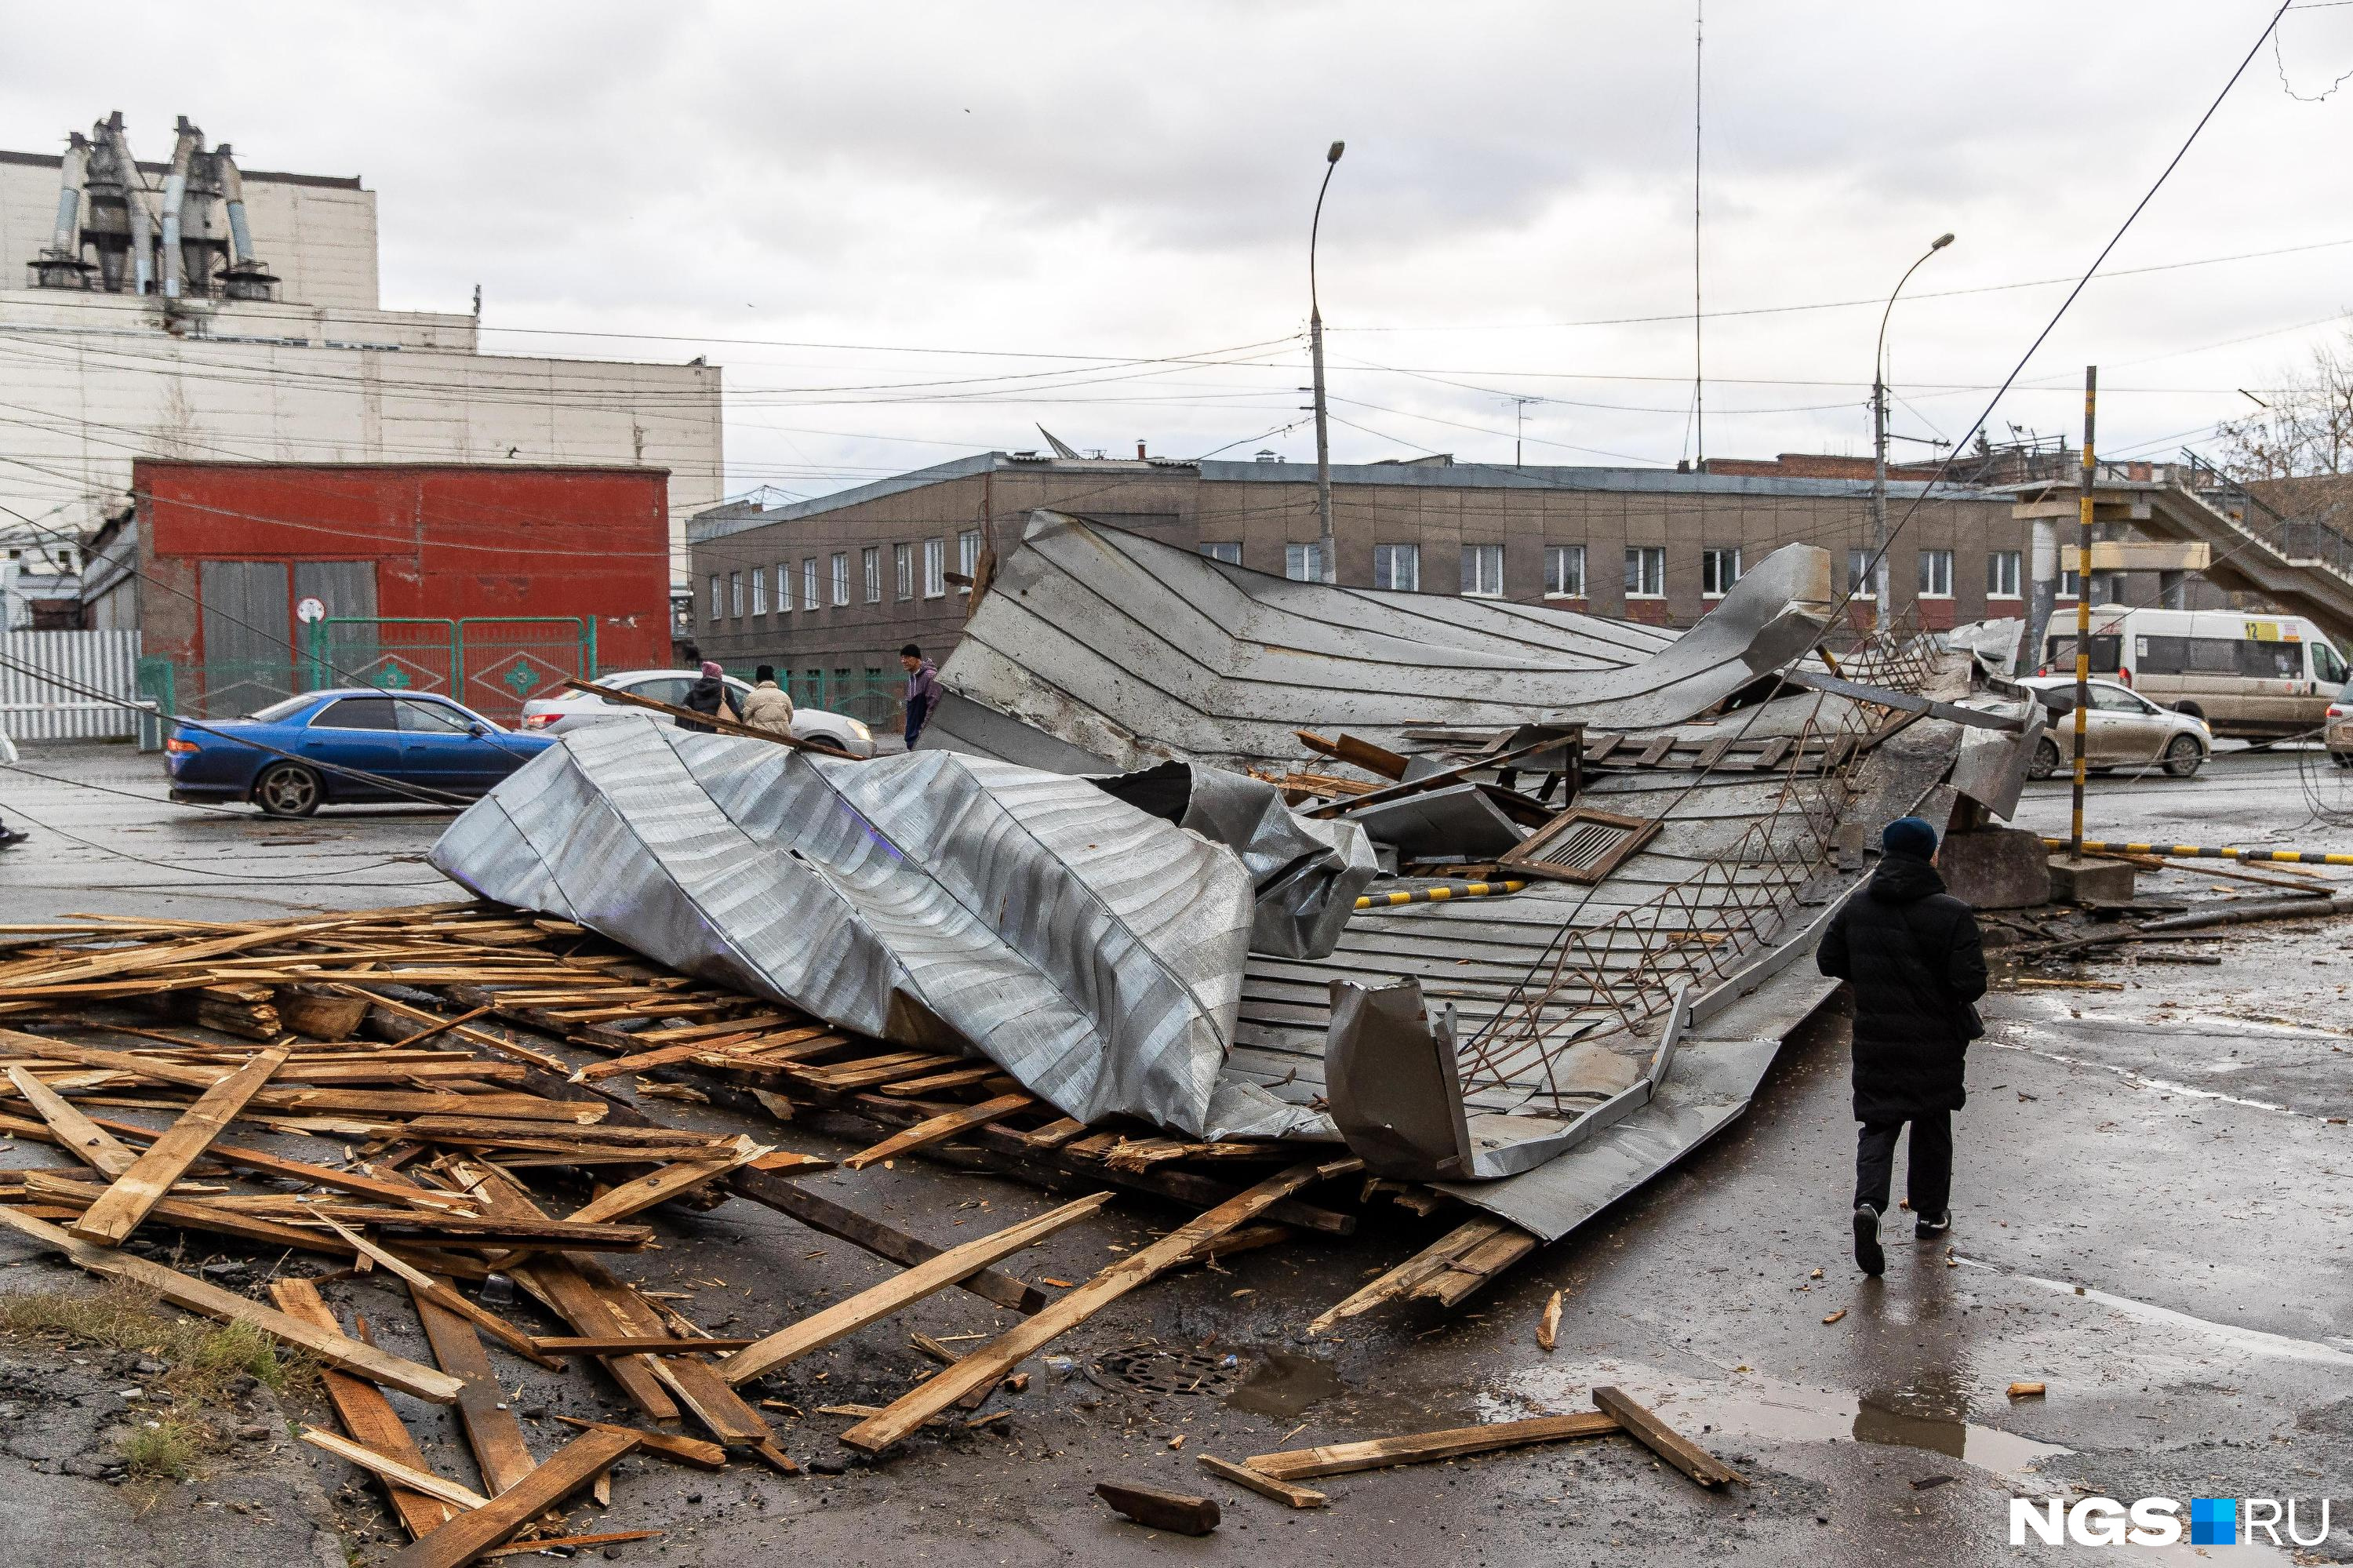 Многоквартирный дом в Кузбассе заливает водой после разрушения крыши ураганом: комментарий властей